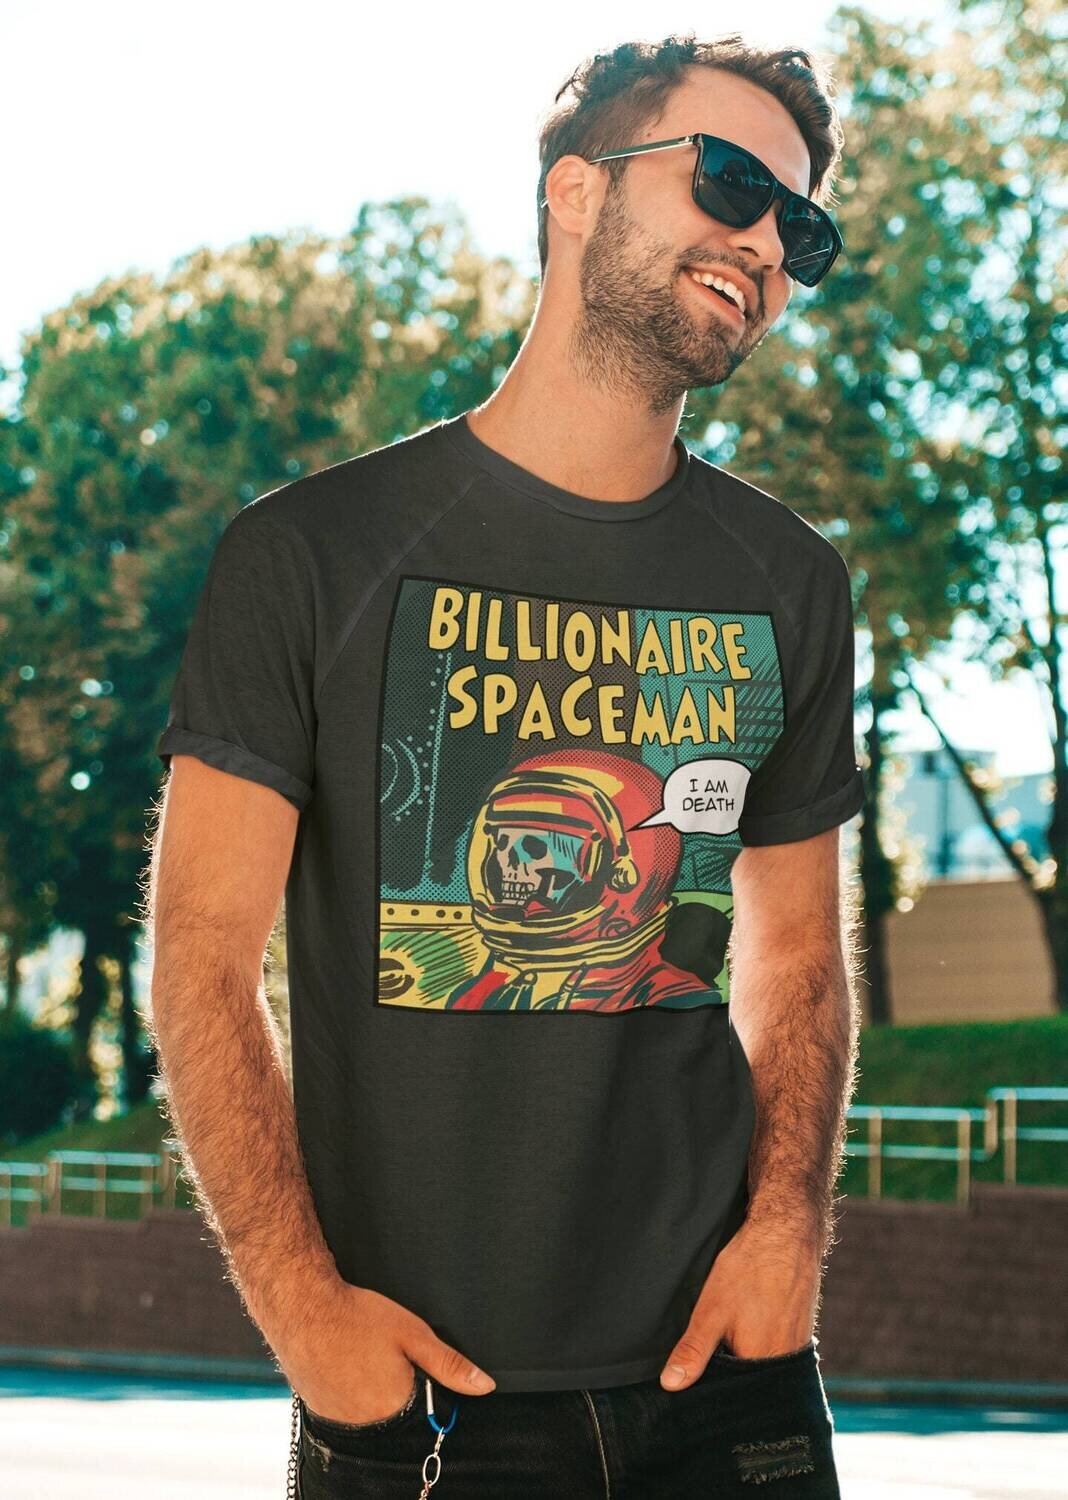 Billionaire Space Man - Ich bin der Tod.